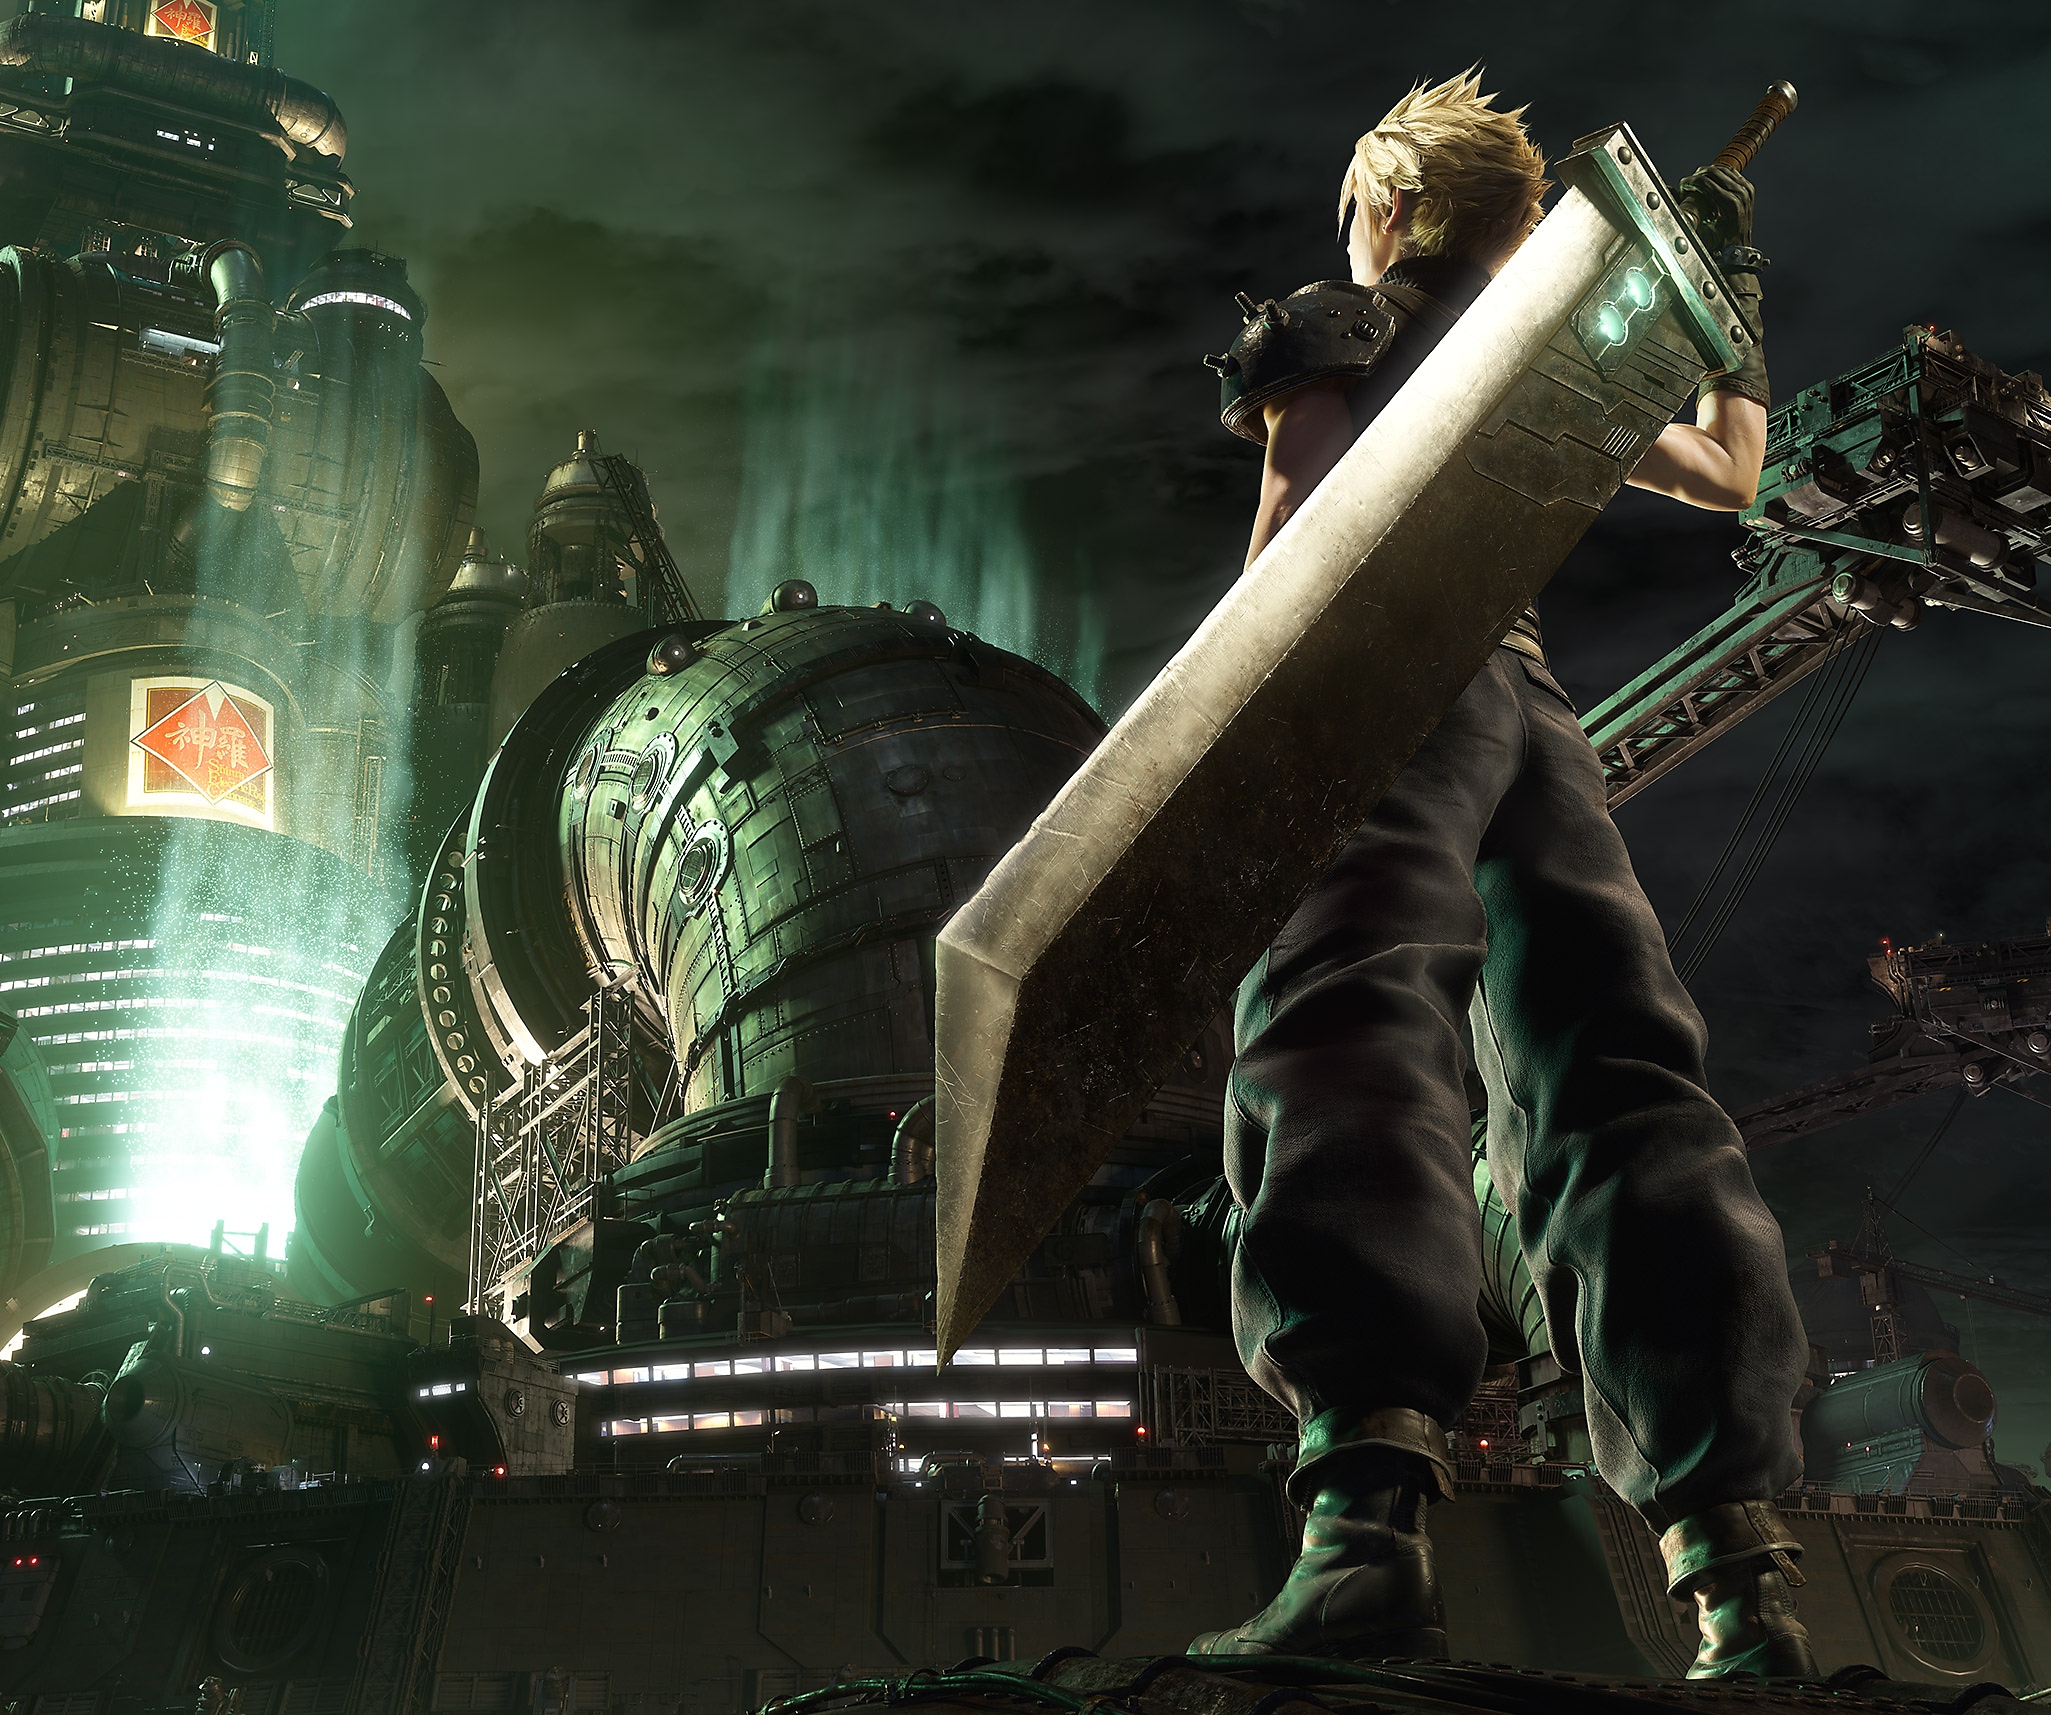 Final Fantasy VII Remake – bild på huvudpersonen Cloud som står framför Shinras högkvarter.